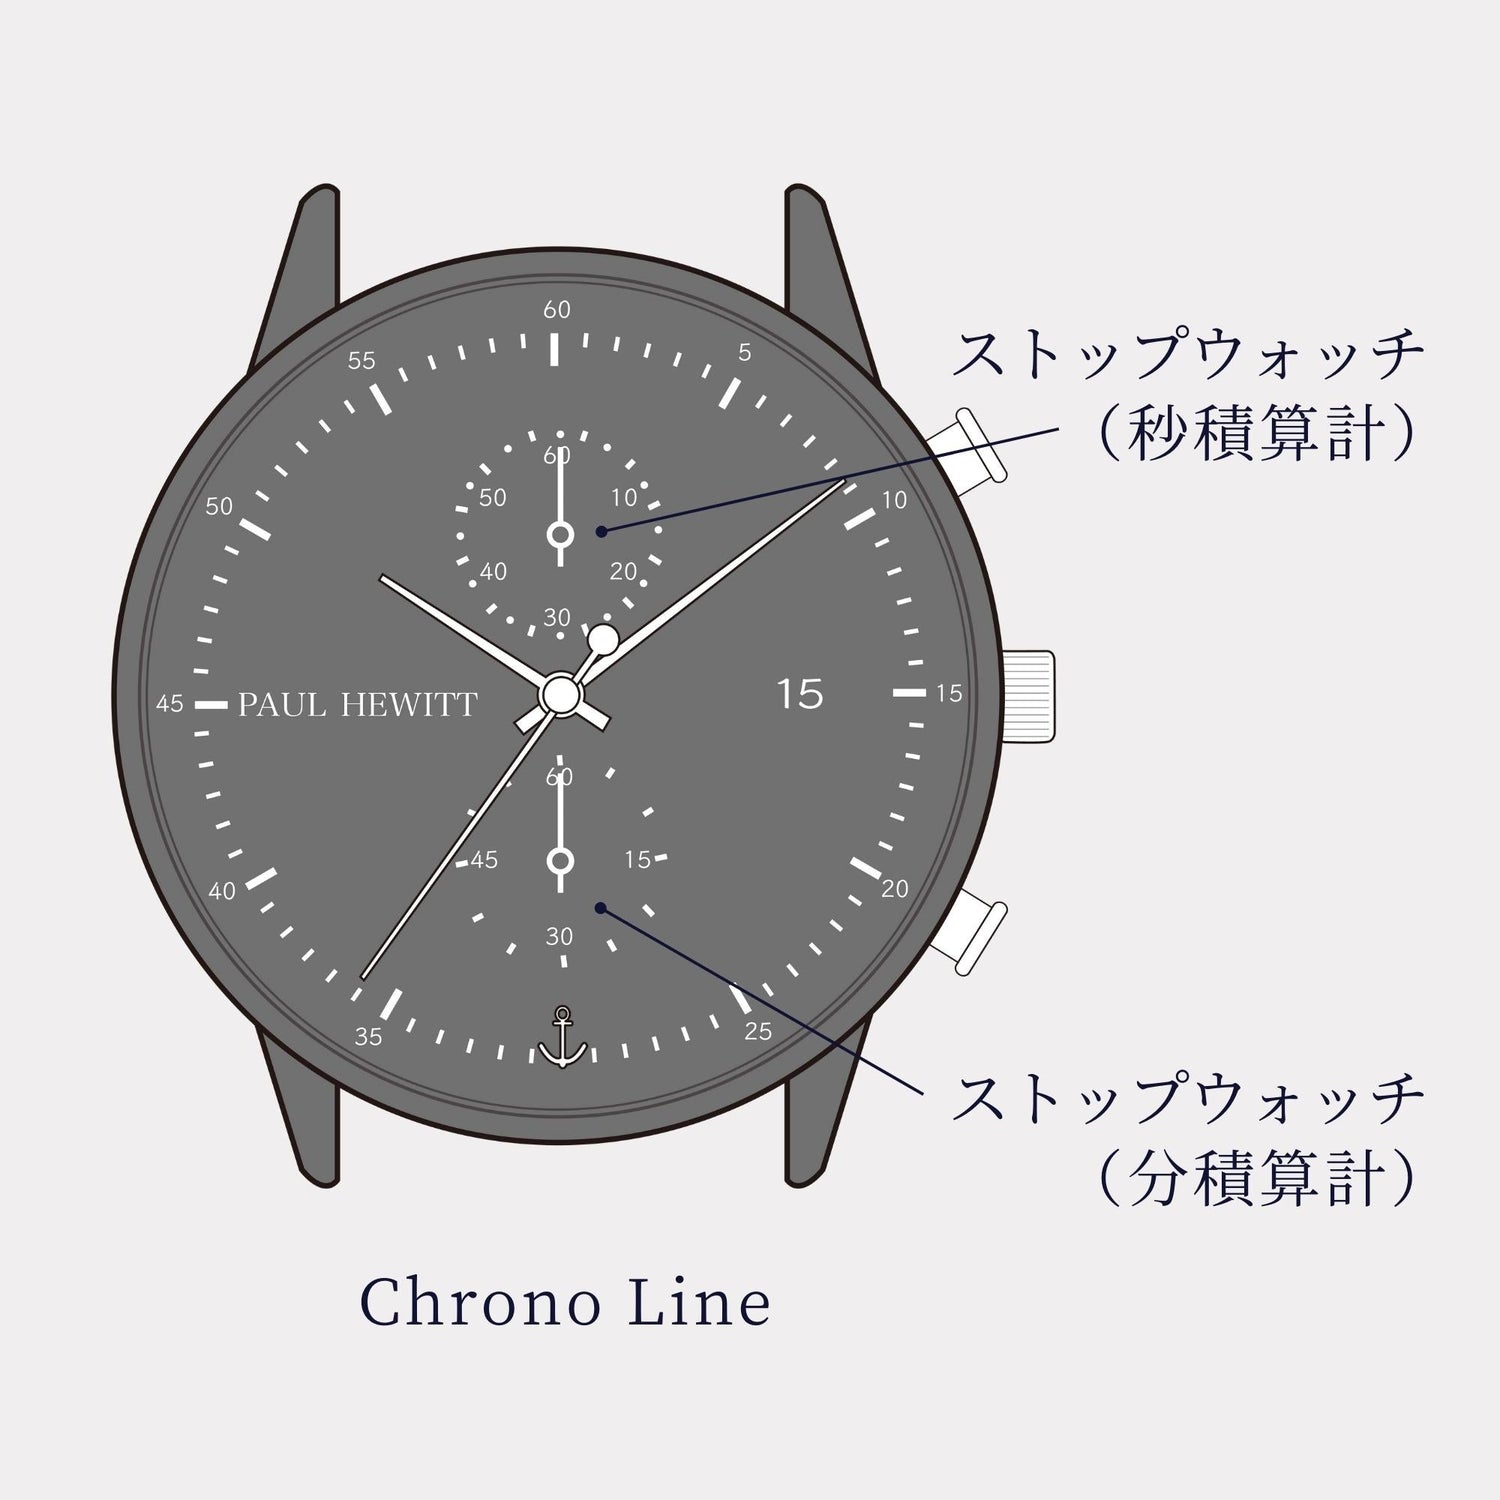 Chrono Line ブラックサンレイ/ローズゴールド ブラック - ポールヒューイット日本公式サイト